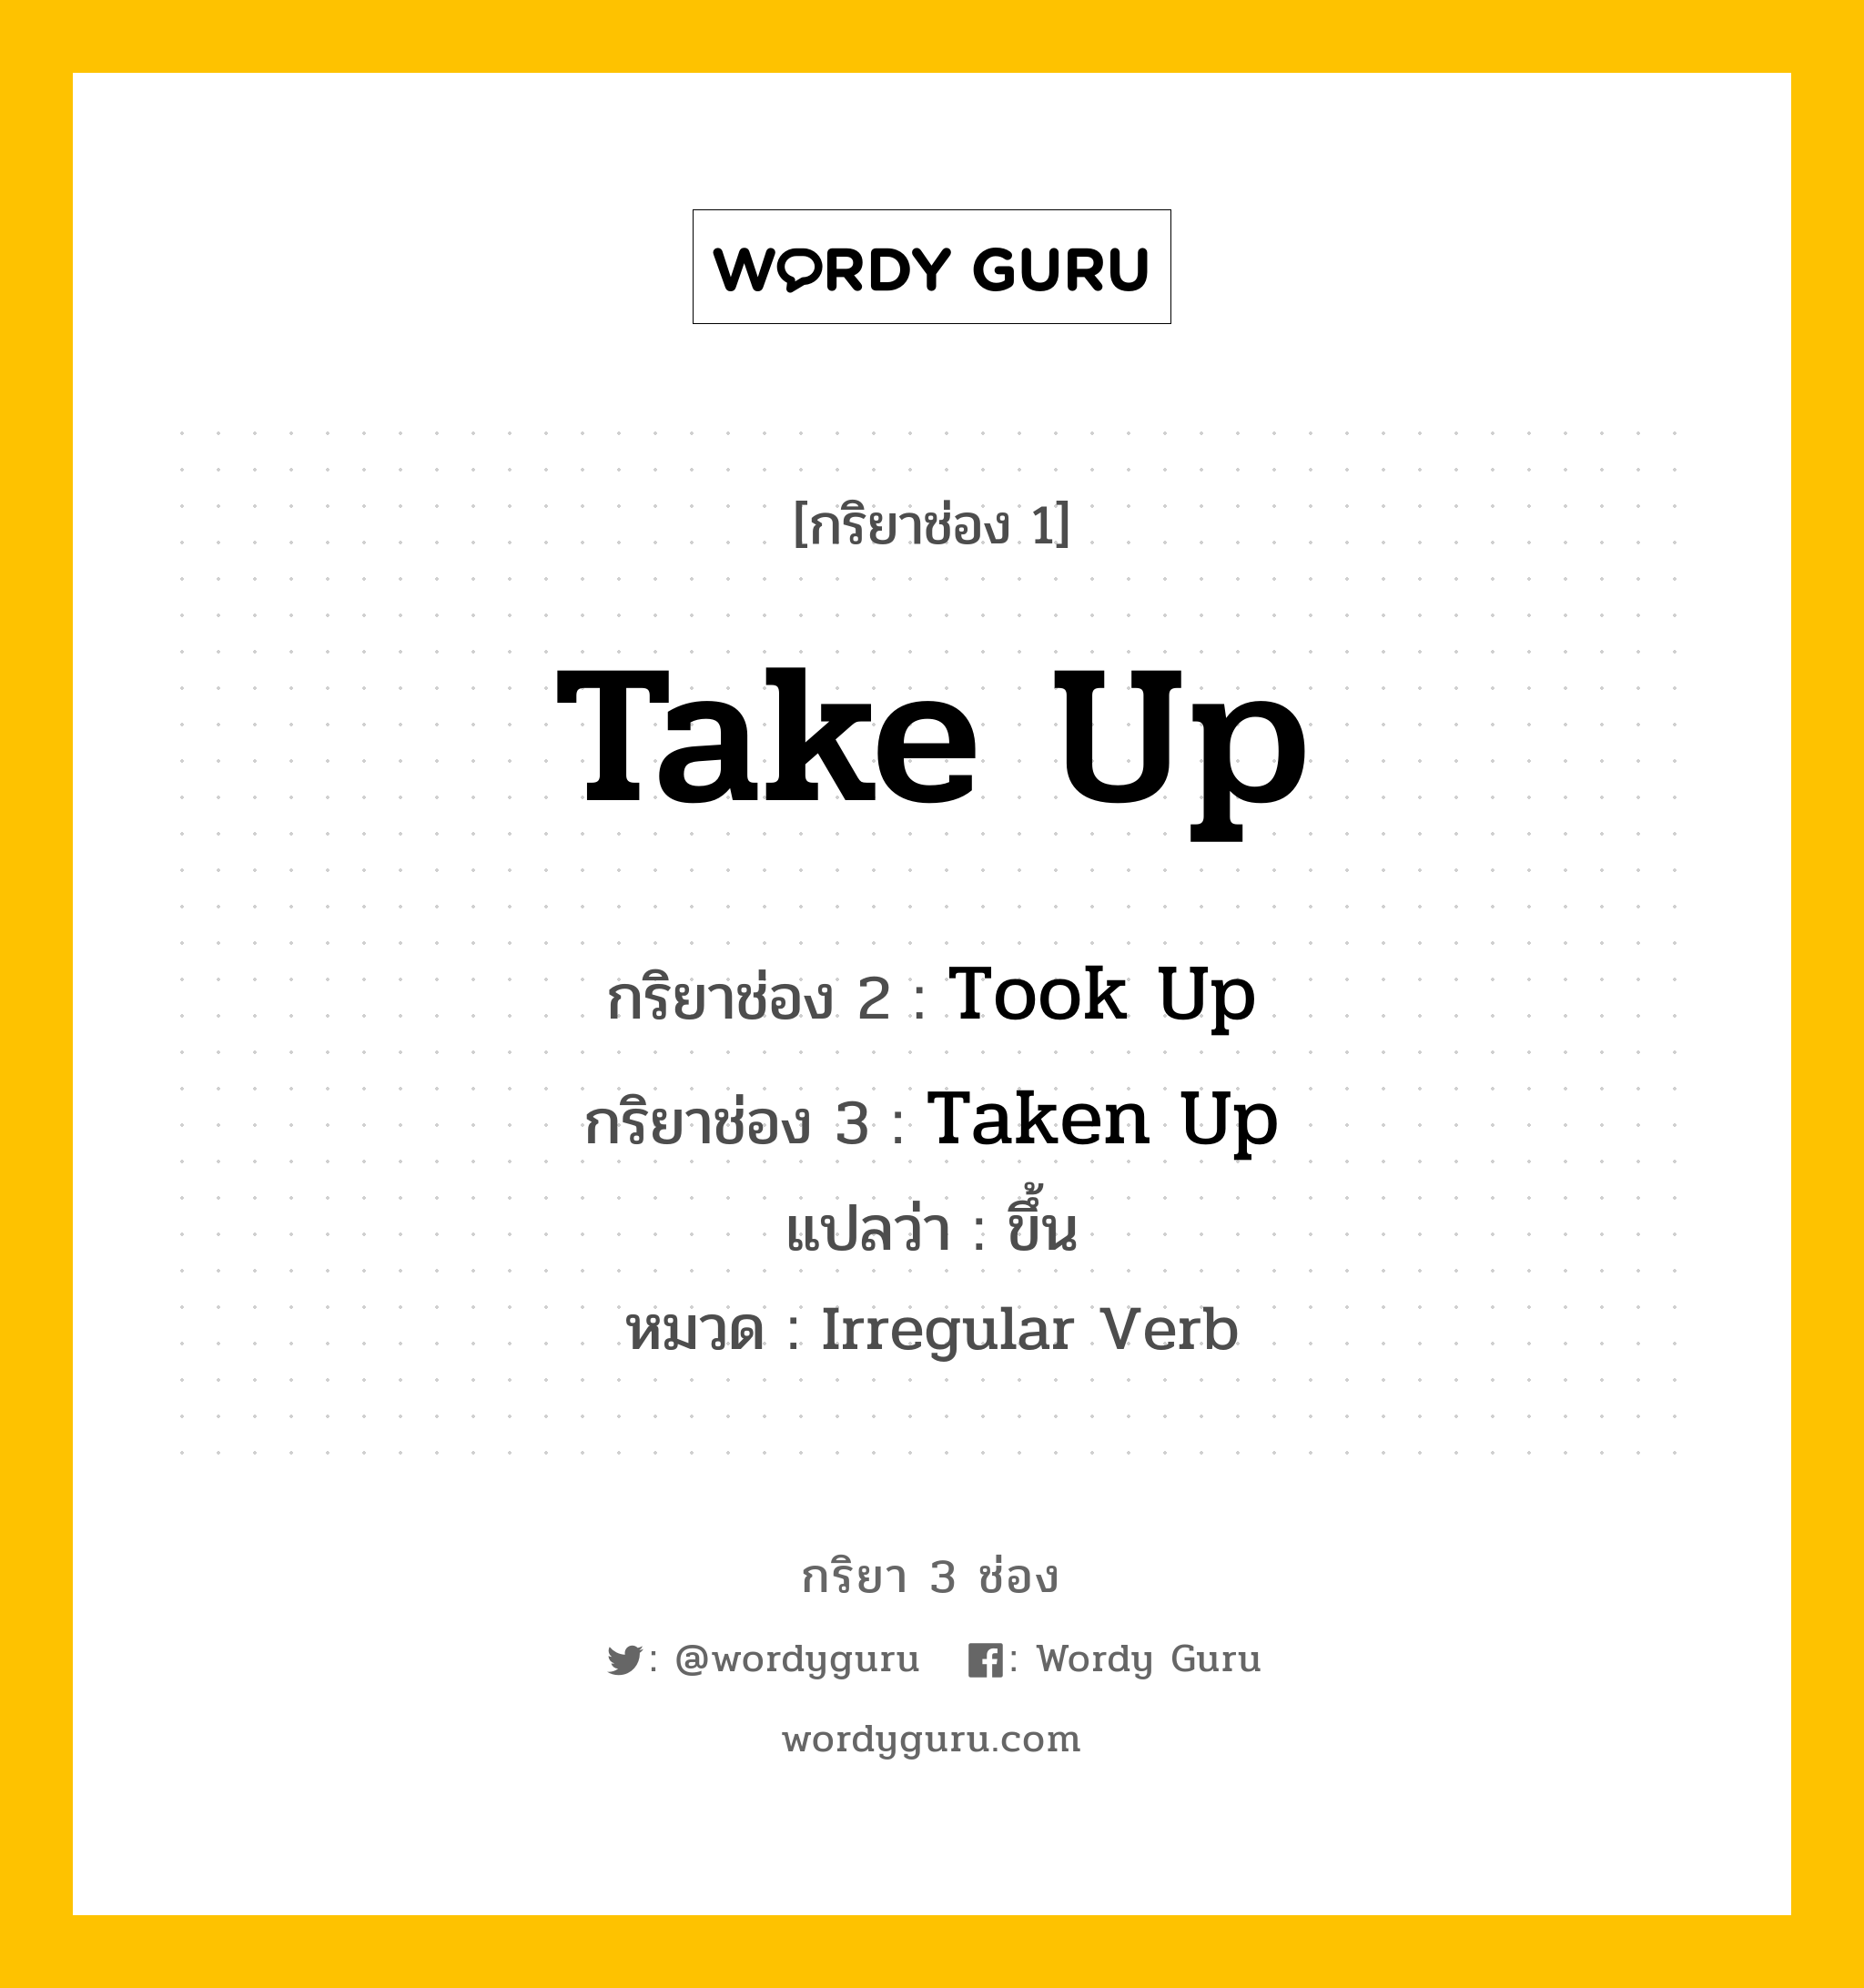 กริยา 3 ช่อง: Take Up ช่อง 2 Take Up ช่อง 3 คืออะไร, กริยาช่อง 1 Take Up กริยาช่อง 2 Took Up กริยาช่อง 3 Taken Up แปลว่า ขึ้น หมวด Irregular Verb หมวด Irregular Verb